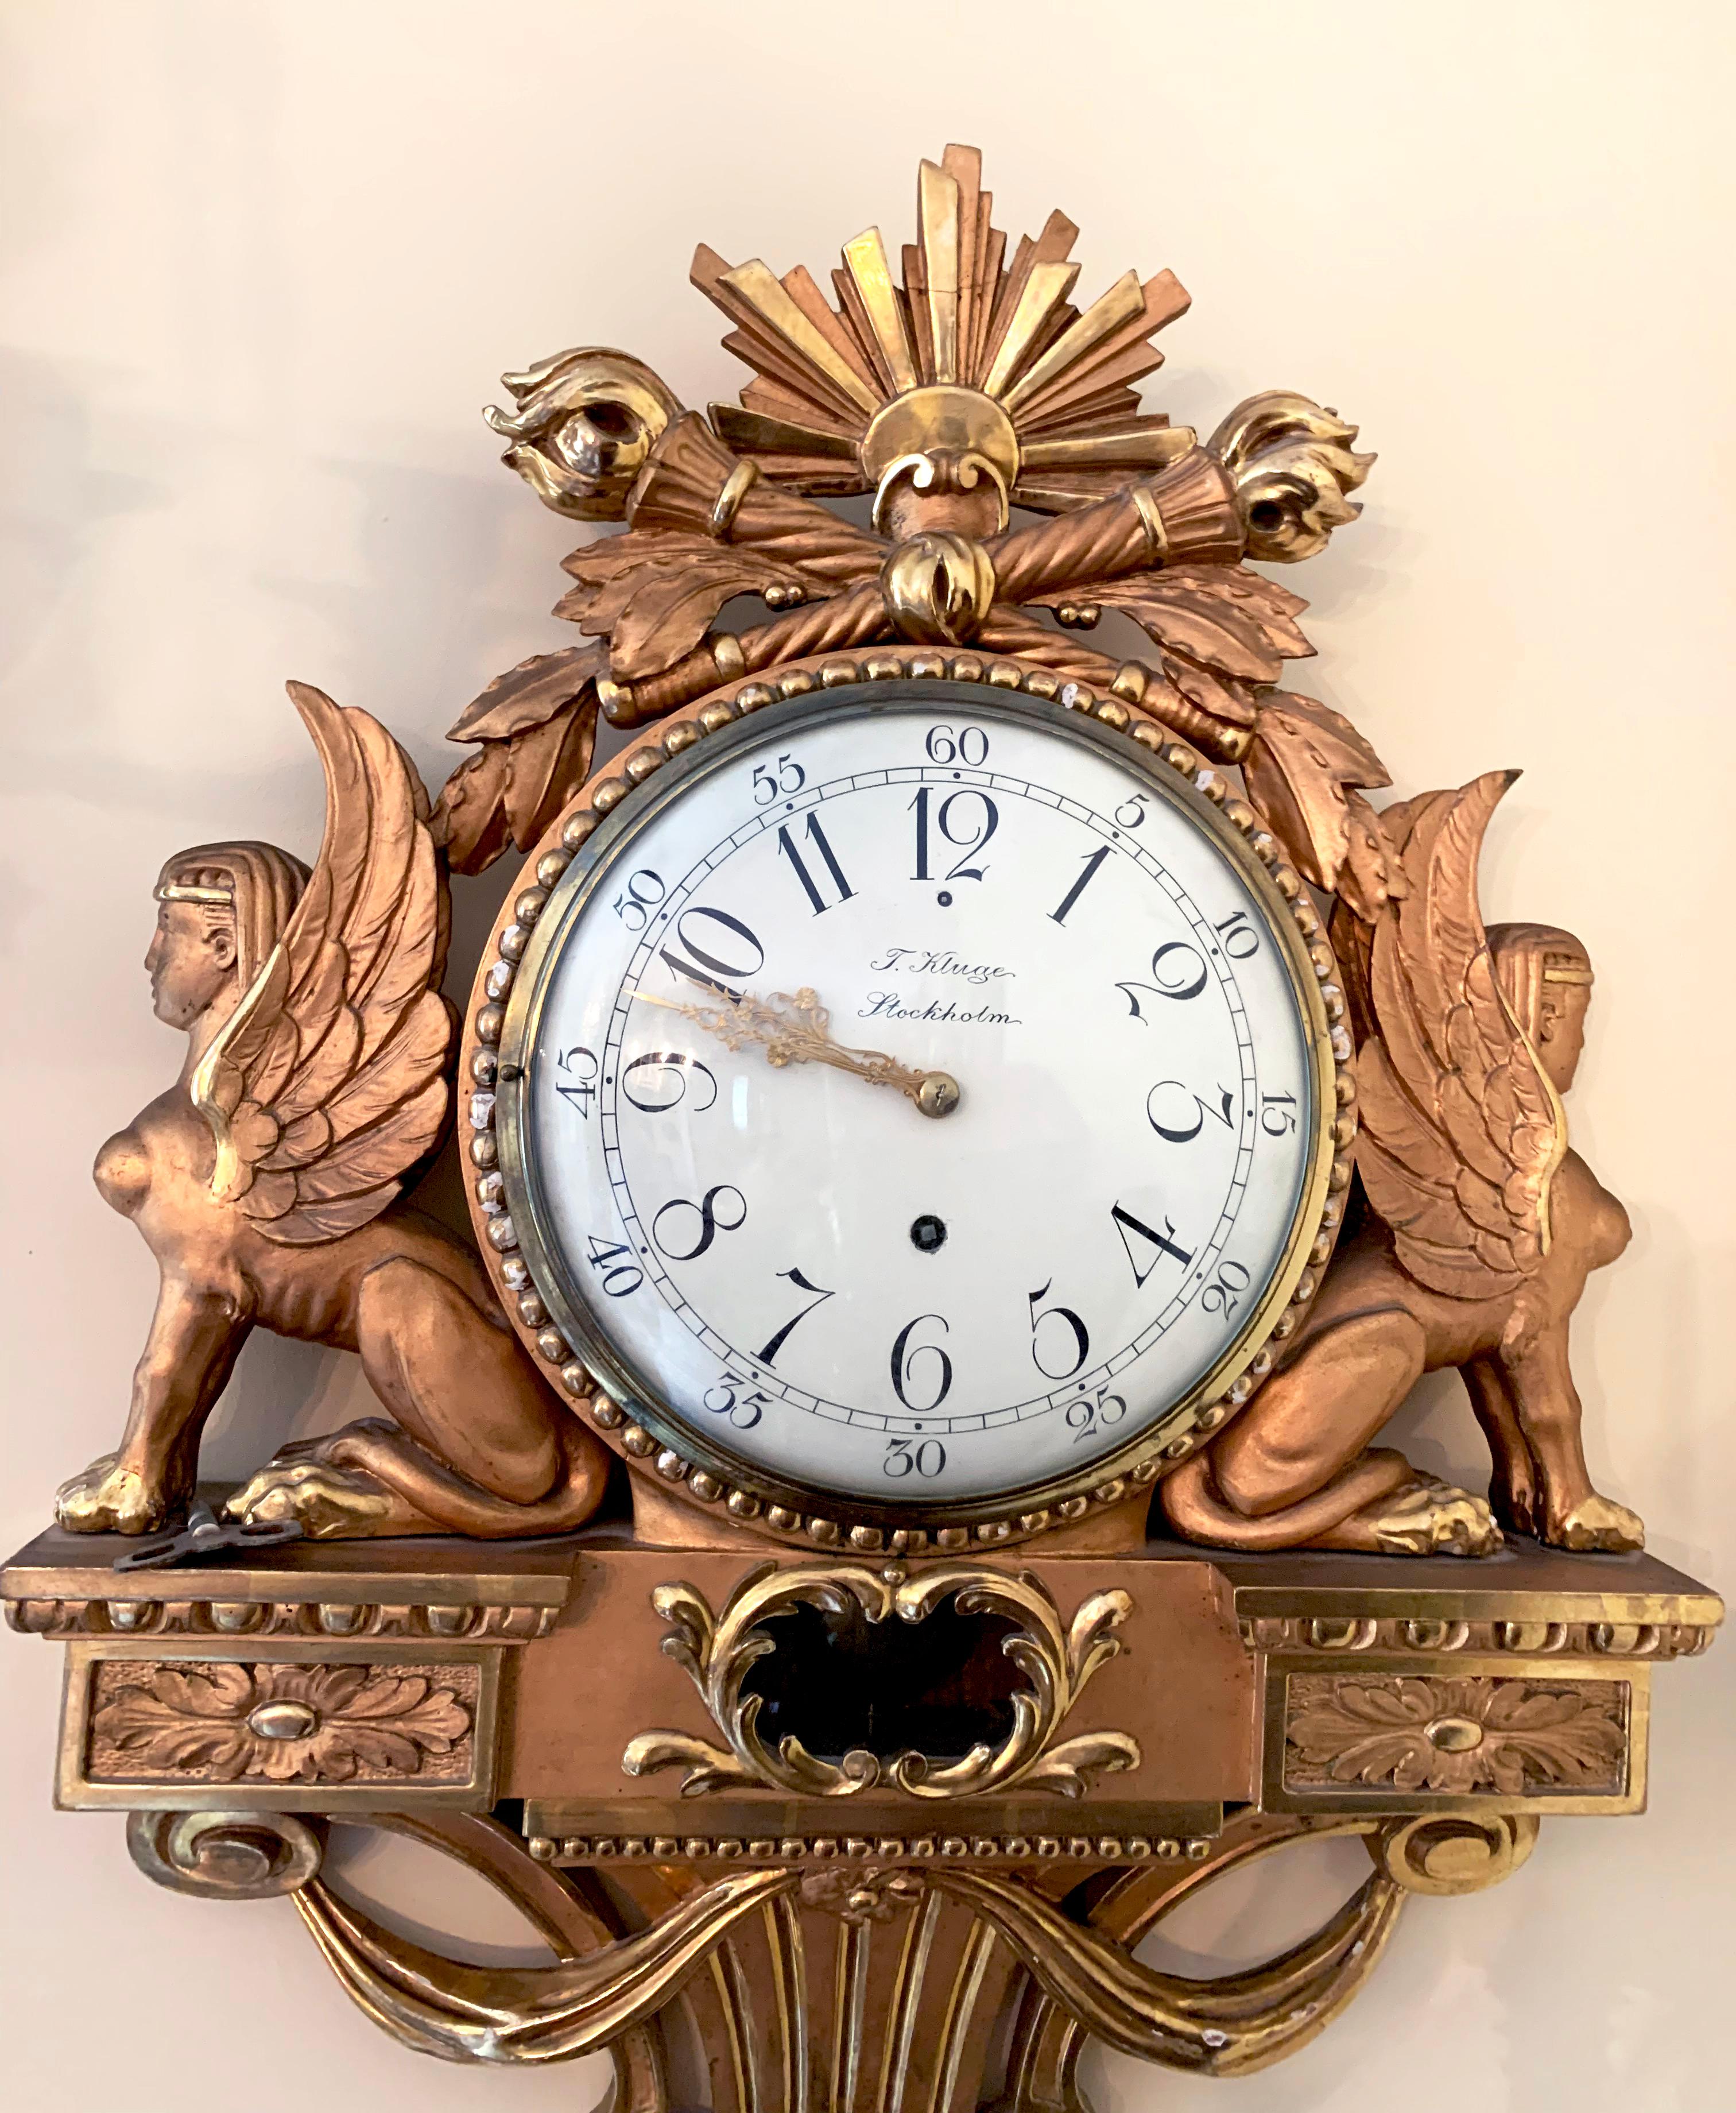 Une belle horloge Empire du 19ème siècle, dorée avec des sphinx assis de chaque côté. Signé avec T Kluge Stockholm au dos. 
Cadran bombé noir et blanc avec aiguilles dorées. Une pièce très décorative de l'époque en très bon état.